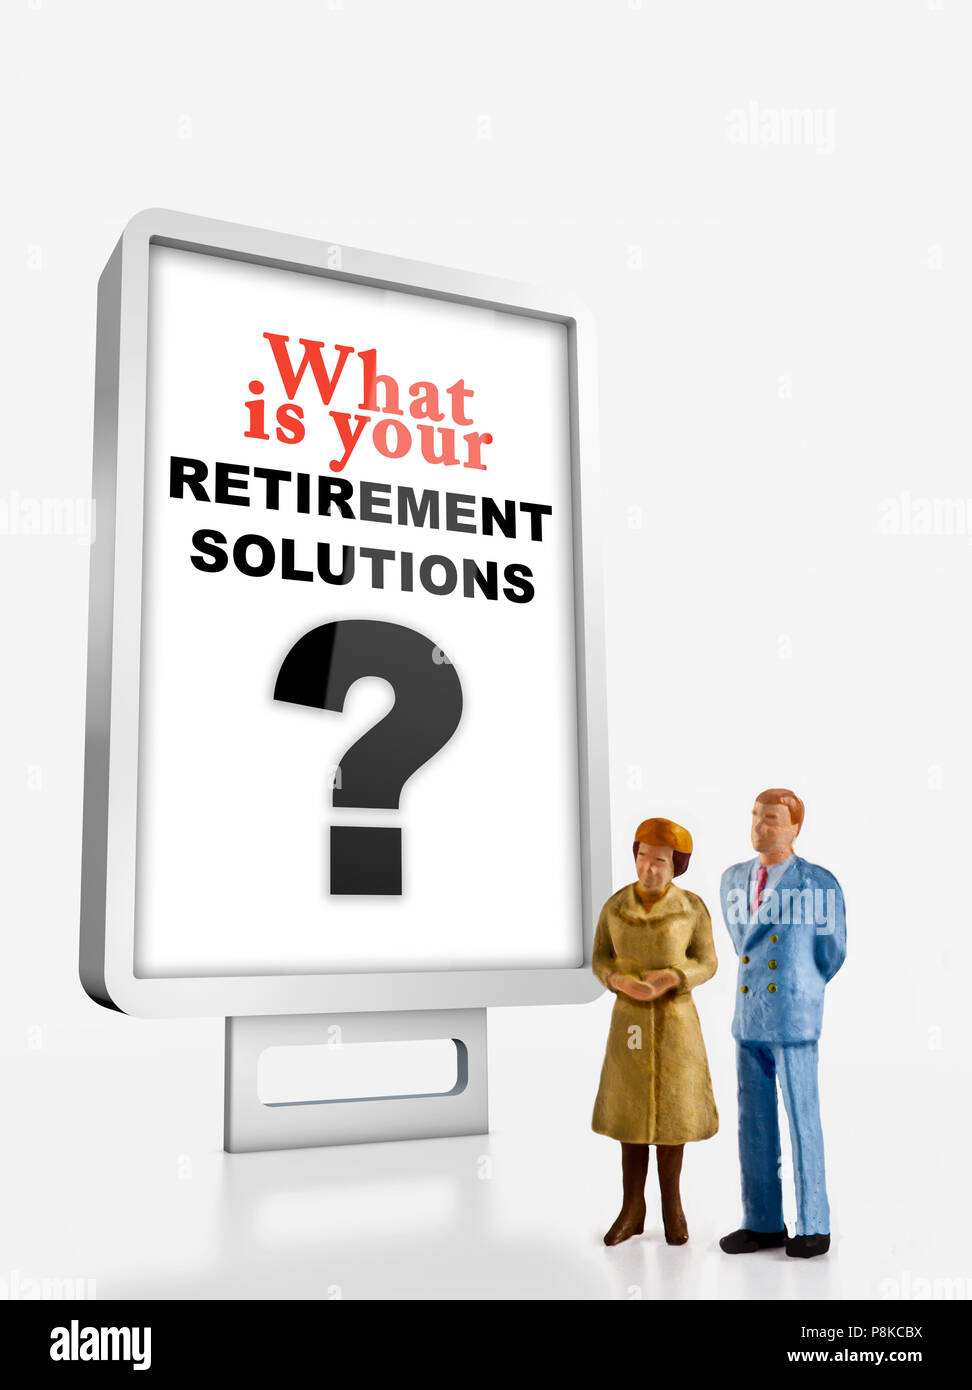 Peuples miniature concept de la retraite, un groupe de personnes d'âge différents sont debout près d'un panneau avec une question au sujet des solutions de retraite message Banque D'Images